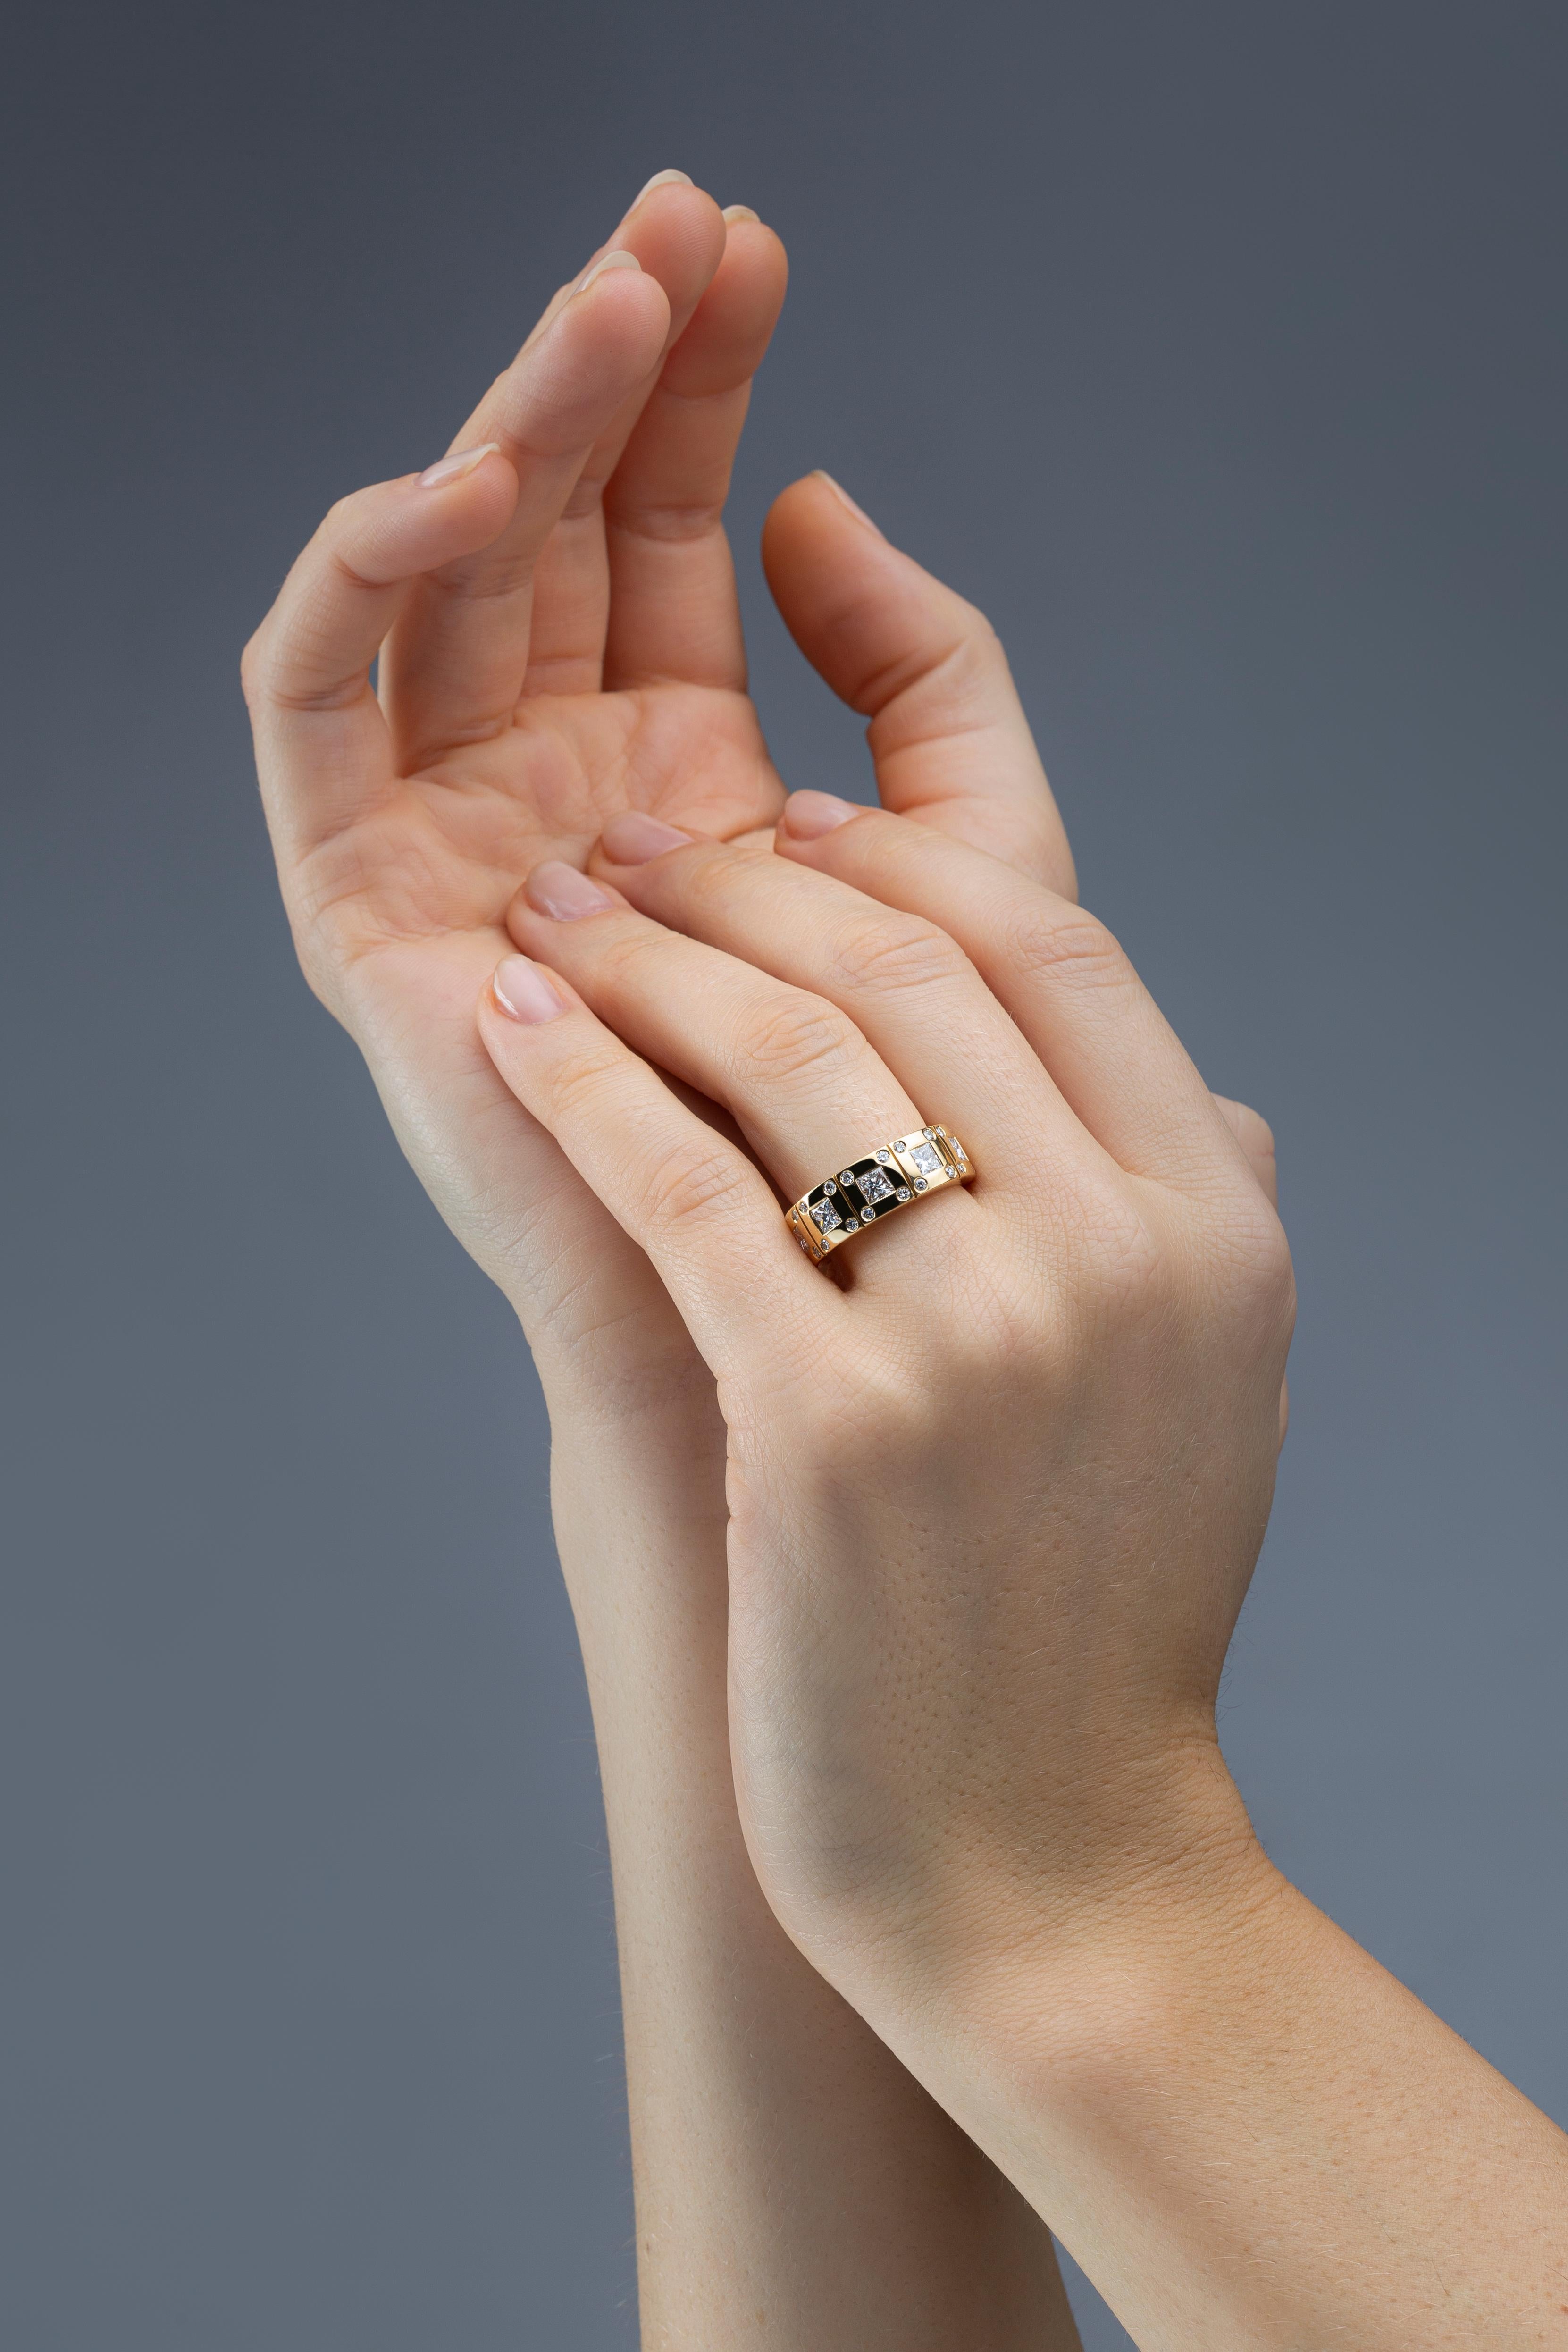 Alex Jona Design-Kollektion, handgefertigt in Italien, 18 Karat Gelbgold Ring mit 5 weißen Diamanten im Quadratschliff mit einem Gesamtgewicht von 1,19 Karat, Farbe G, Klarheit VVS2. US-Größe 6.3 kann auf jede Größe angepasst werden.

Die